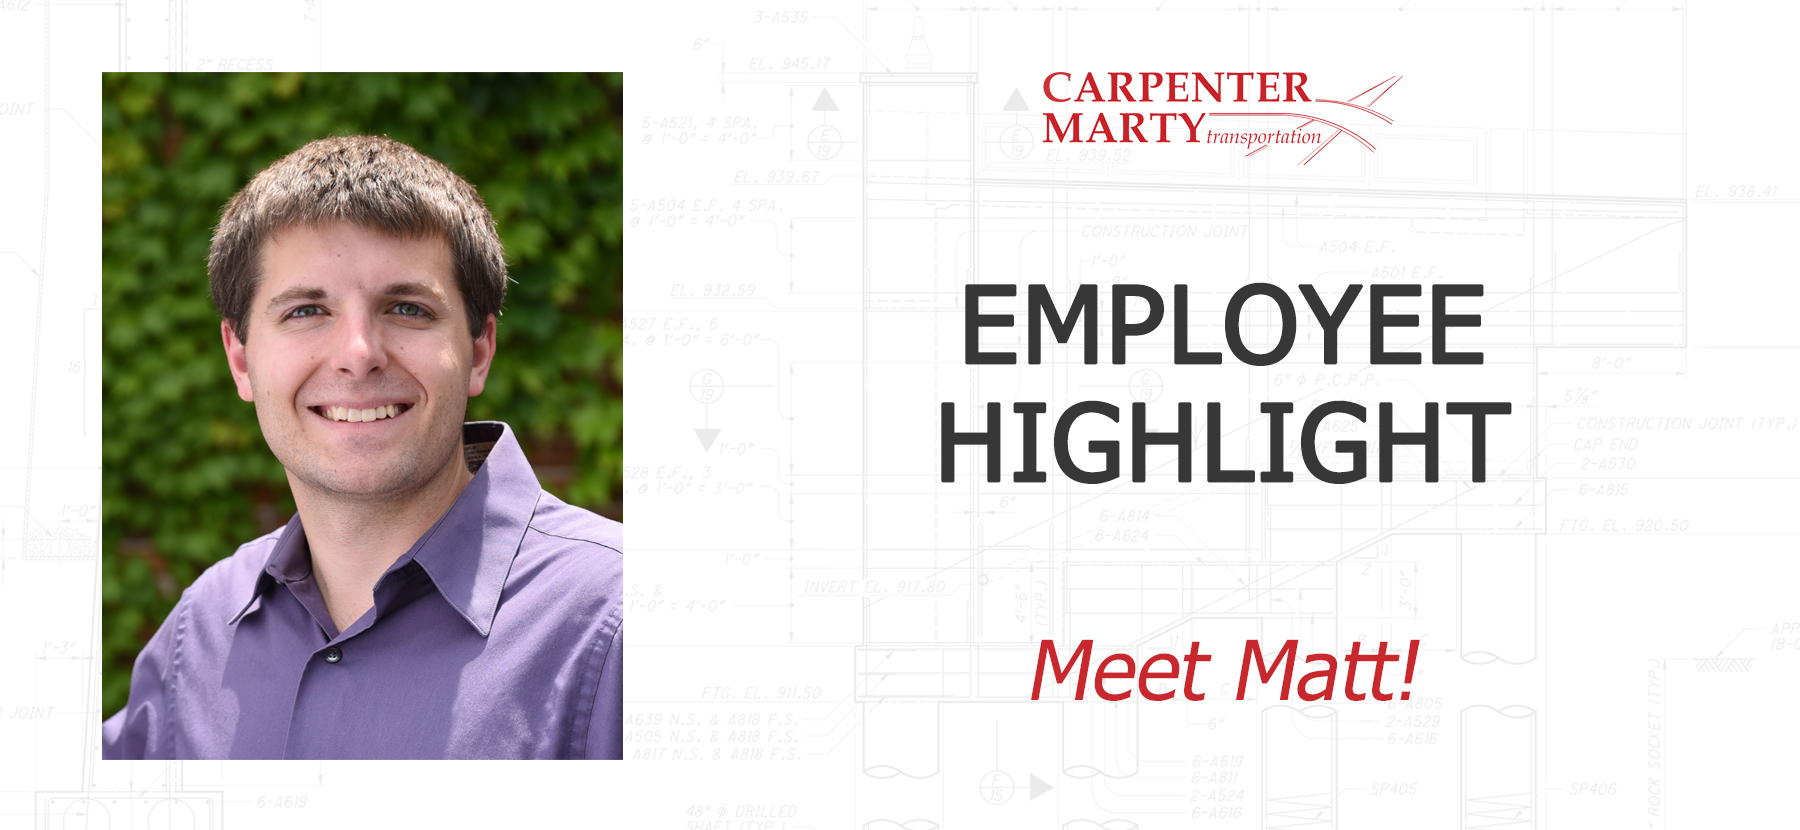 Matt Malich Employee Highlight